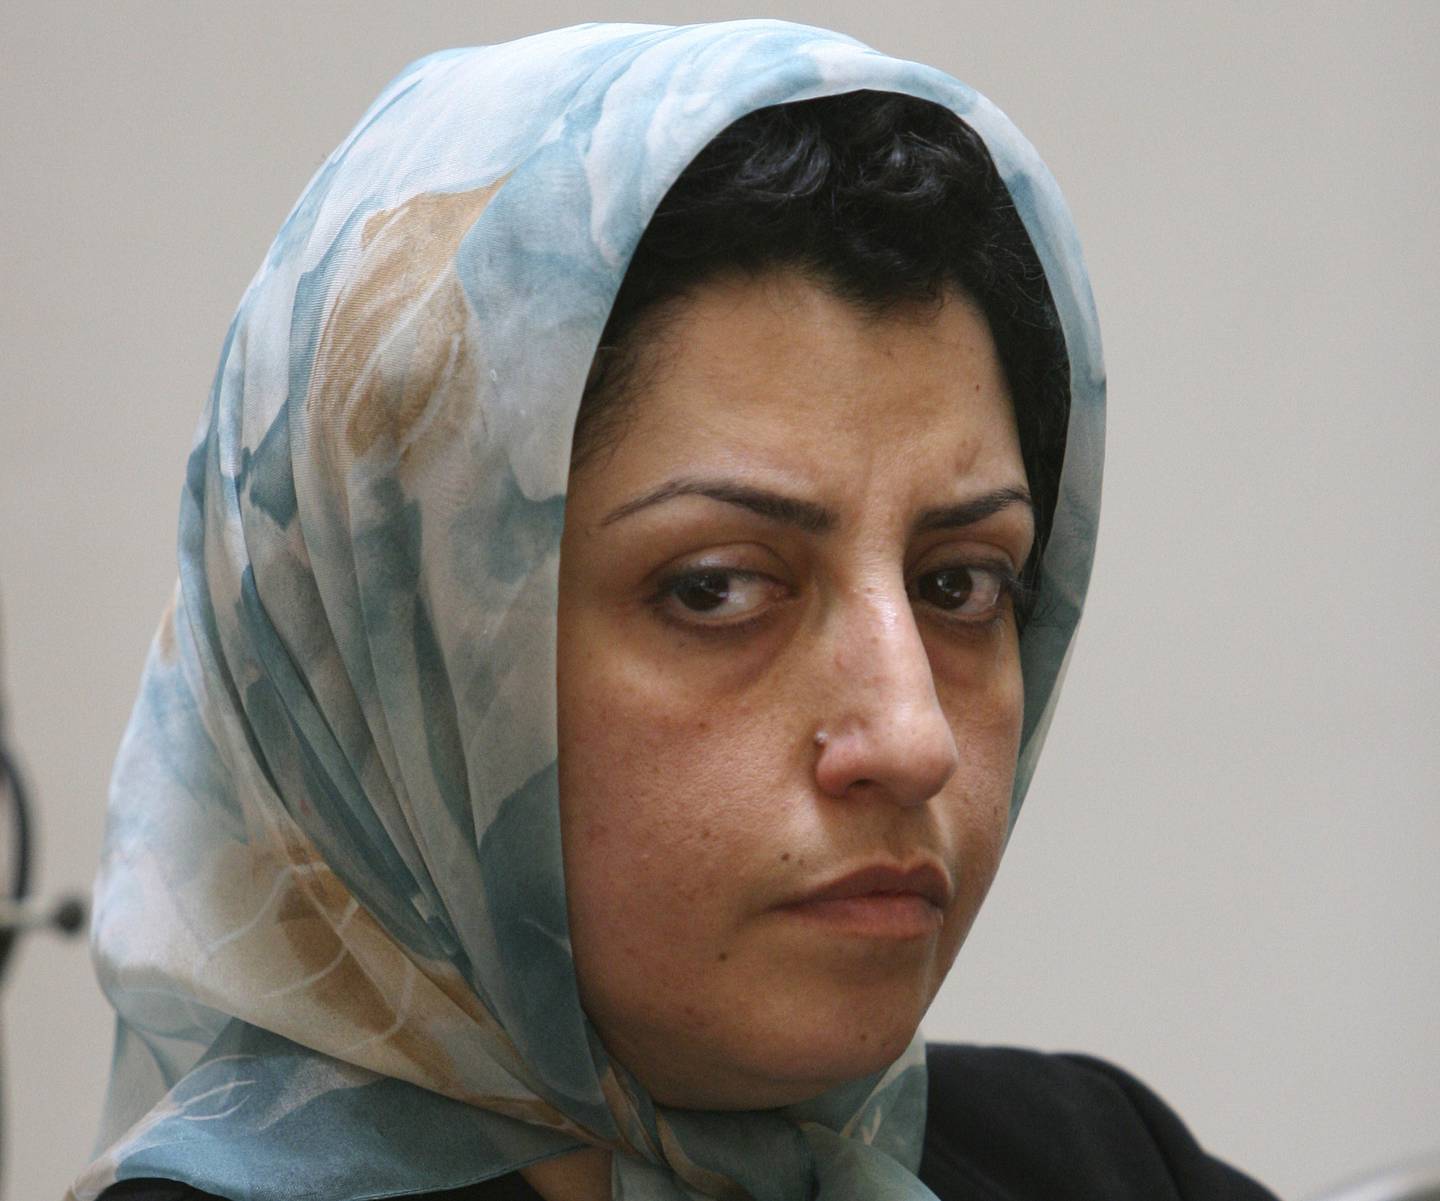 Fredsprisvinner Narges Mohammadi har startet en sultestreik i fengslet i Teheran som følge av de dårlige fengselsvilkårene og Irans fortsatte krav om at kvinner må bære hijab. Her fotografert i Teheran i 2007. Foto: Vahid Salemi / AP / NTB